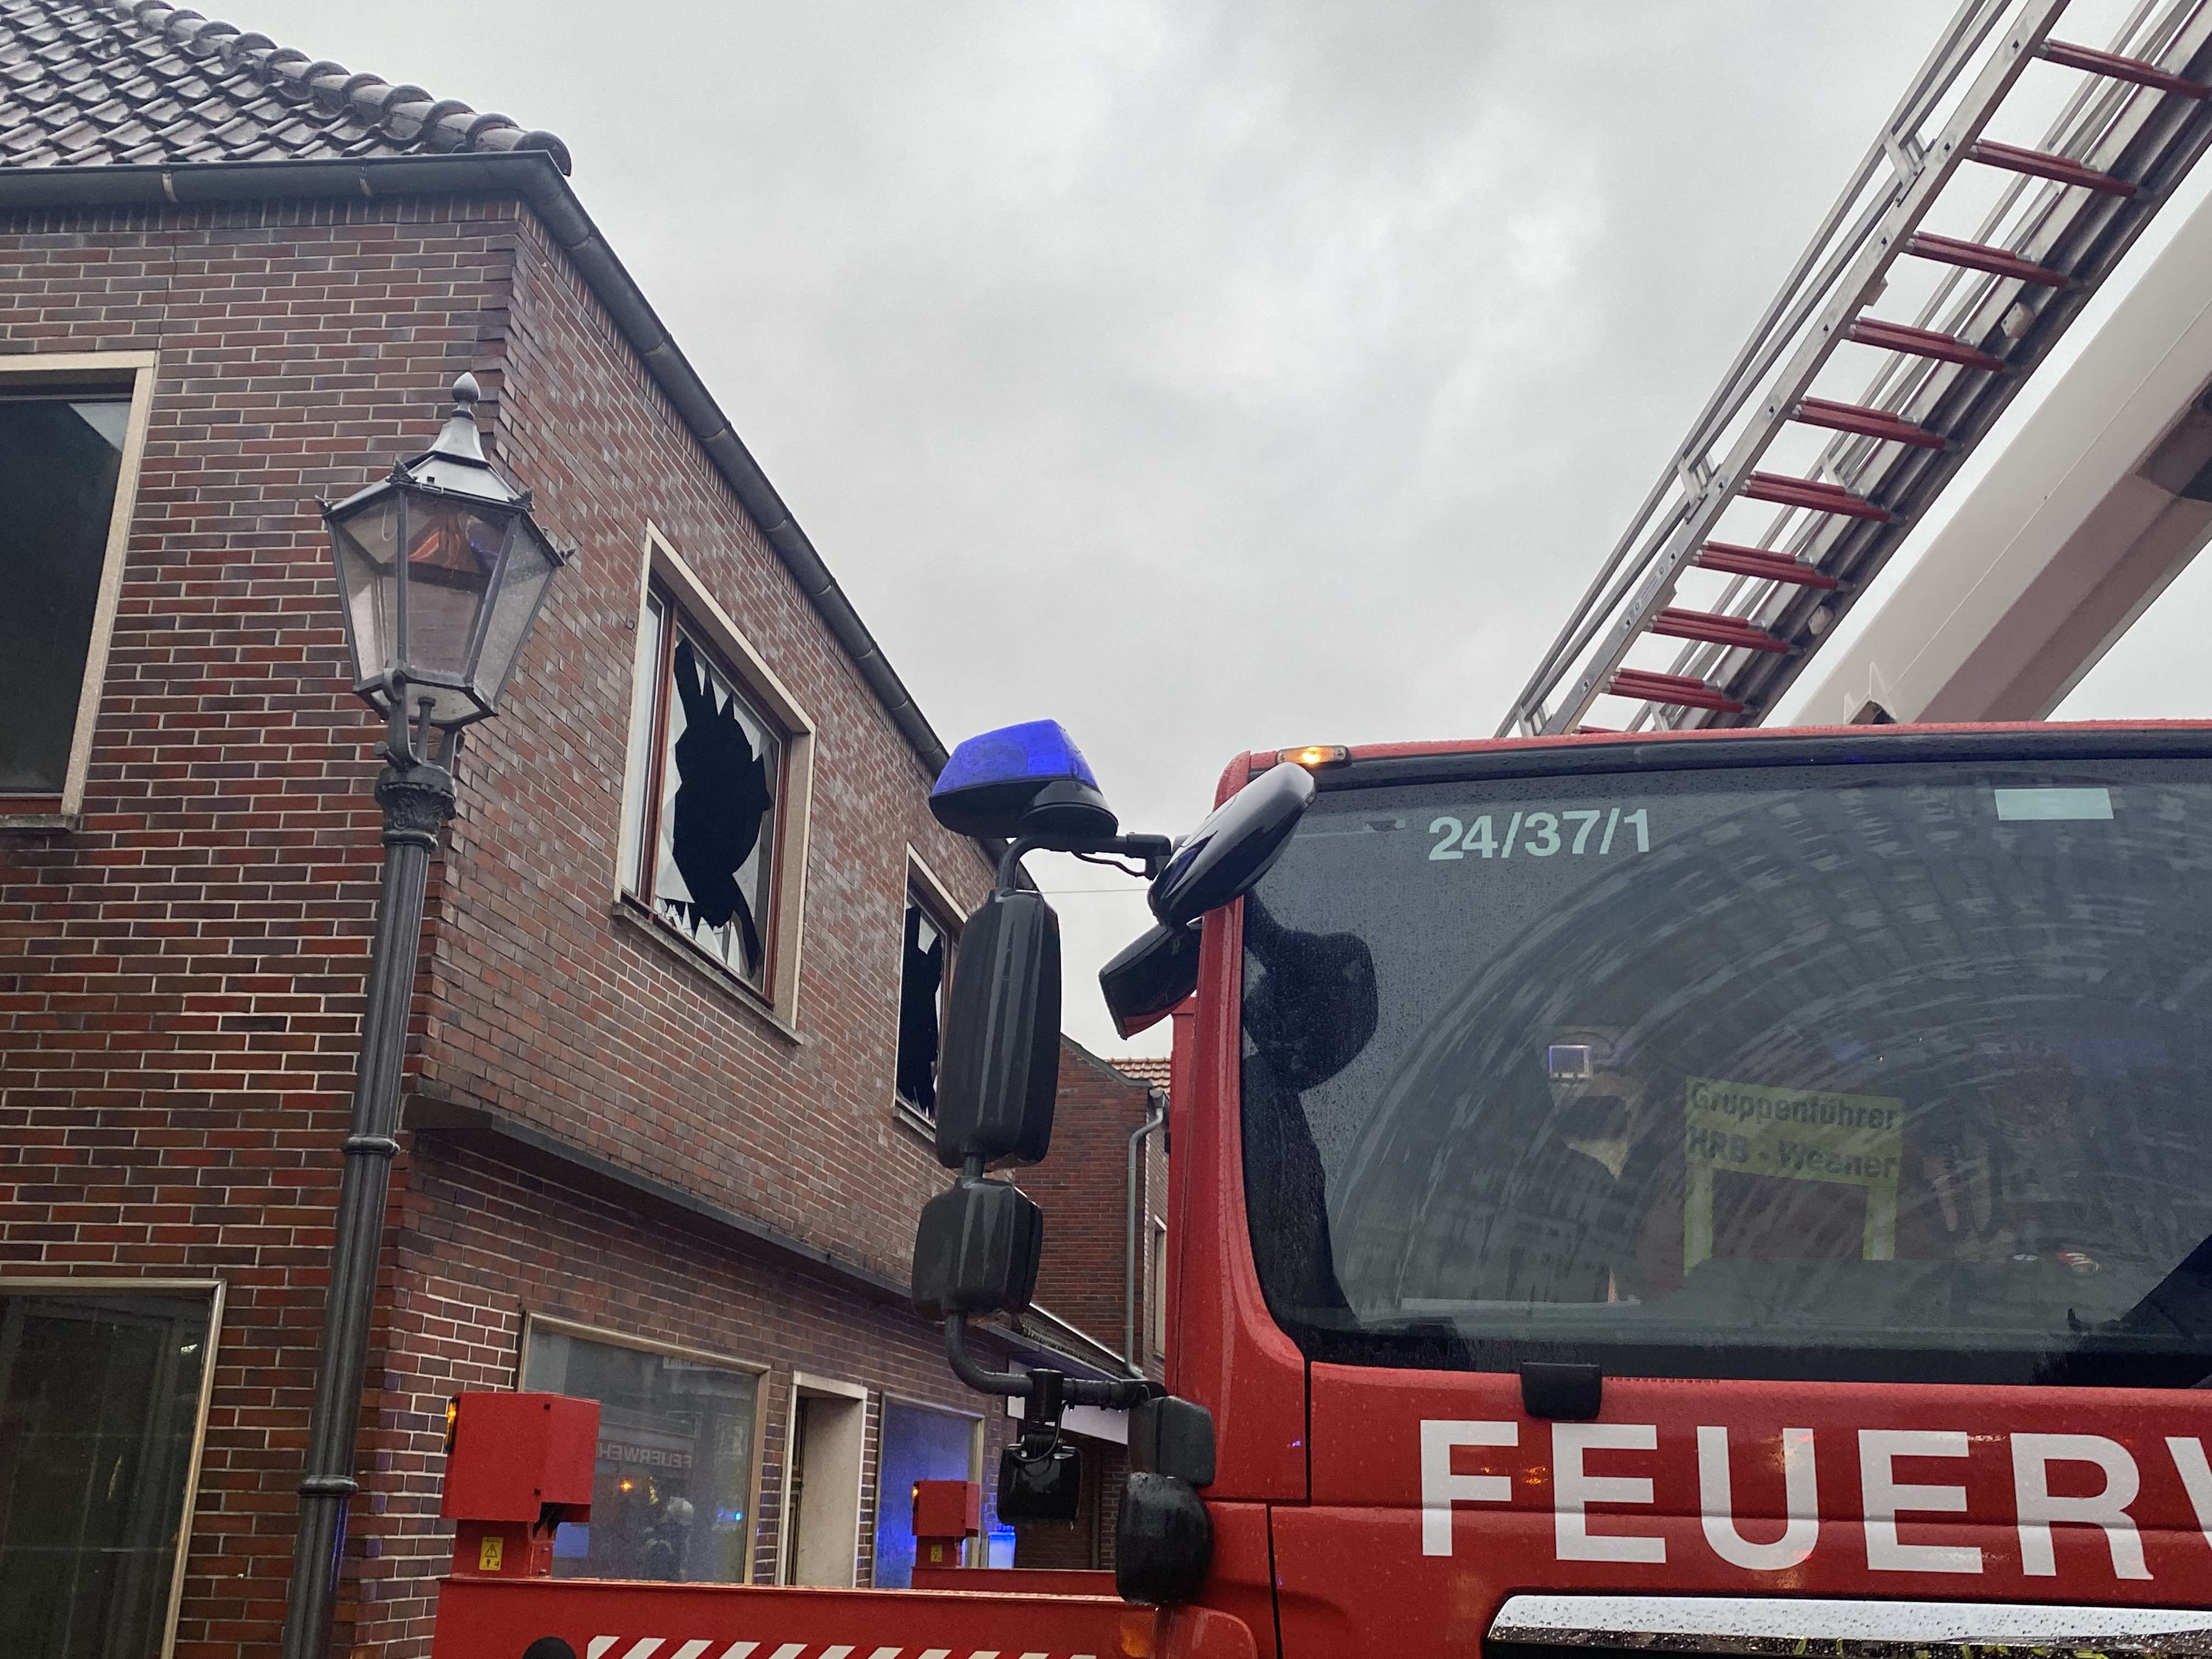 Wohnungsbrand durch Signalrakete - Rheiderland Zeitung